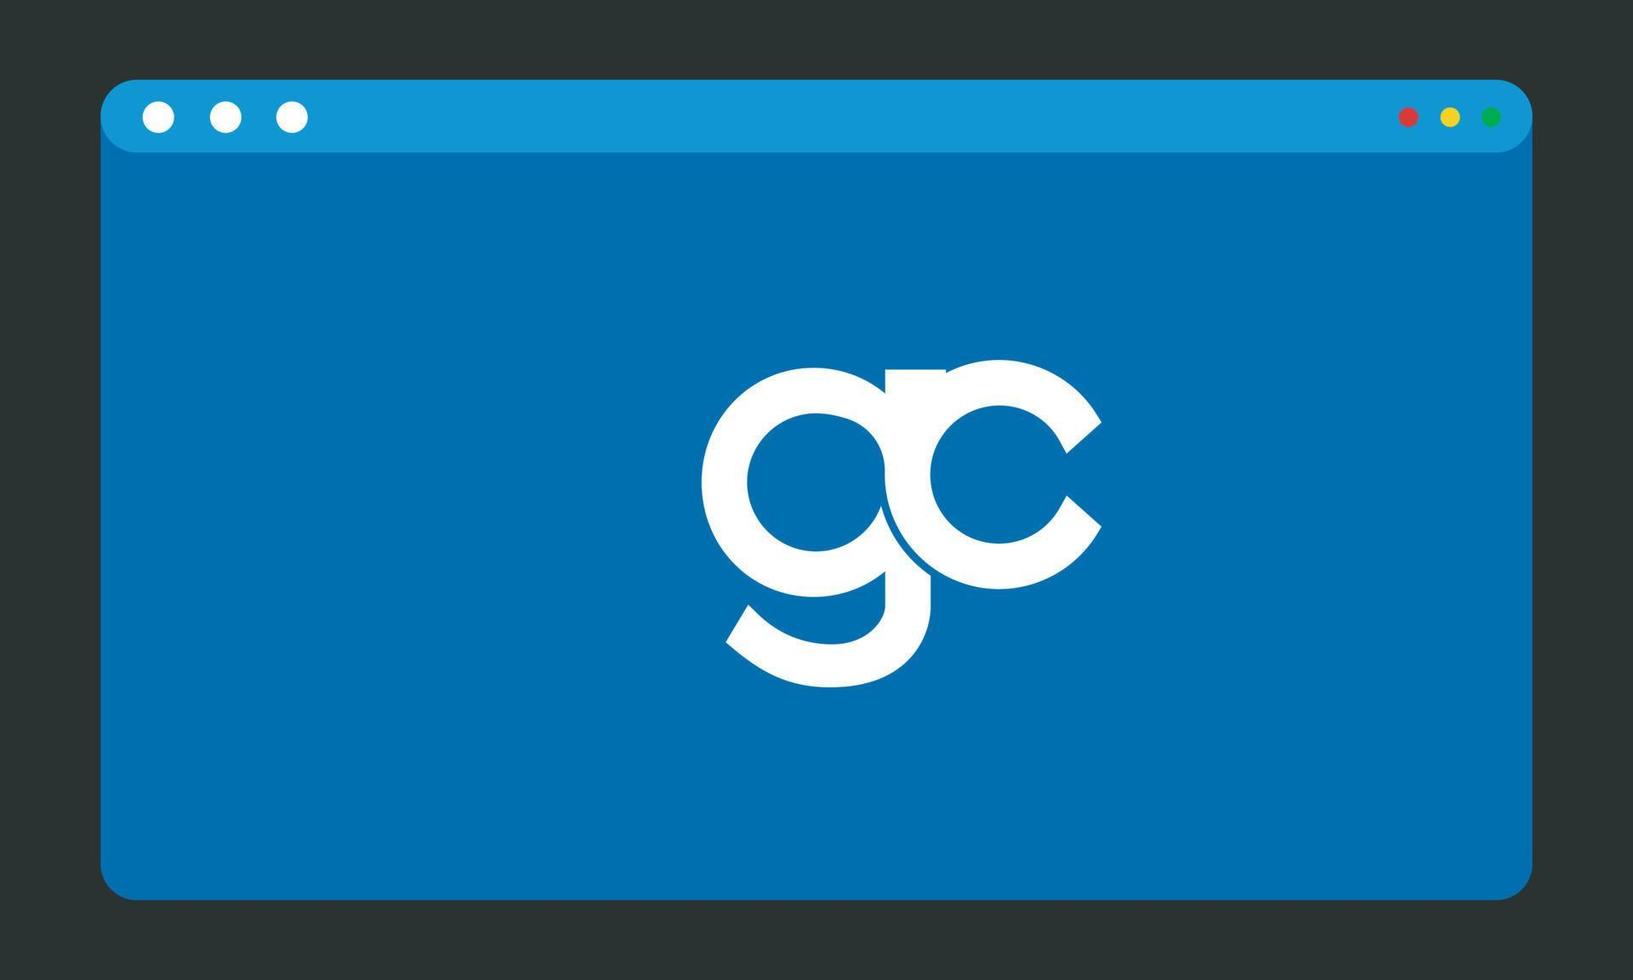 alfabet letters initialen monogram logo gc, cg, g en c vector